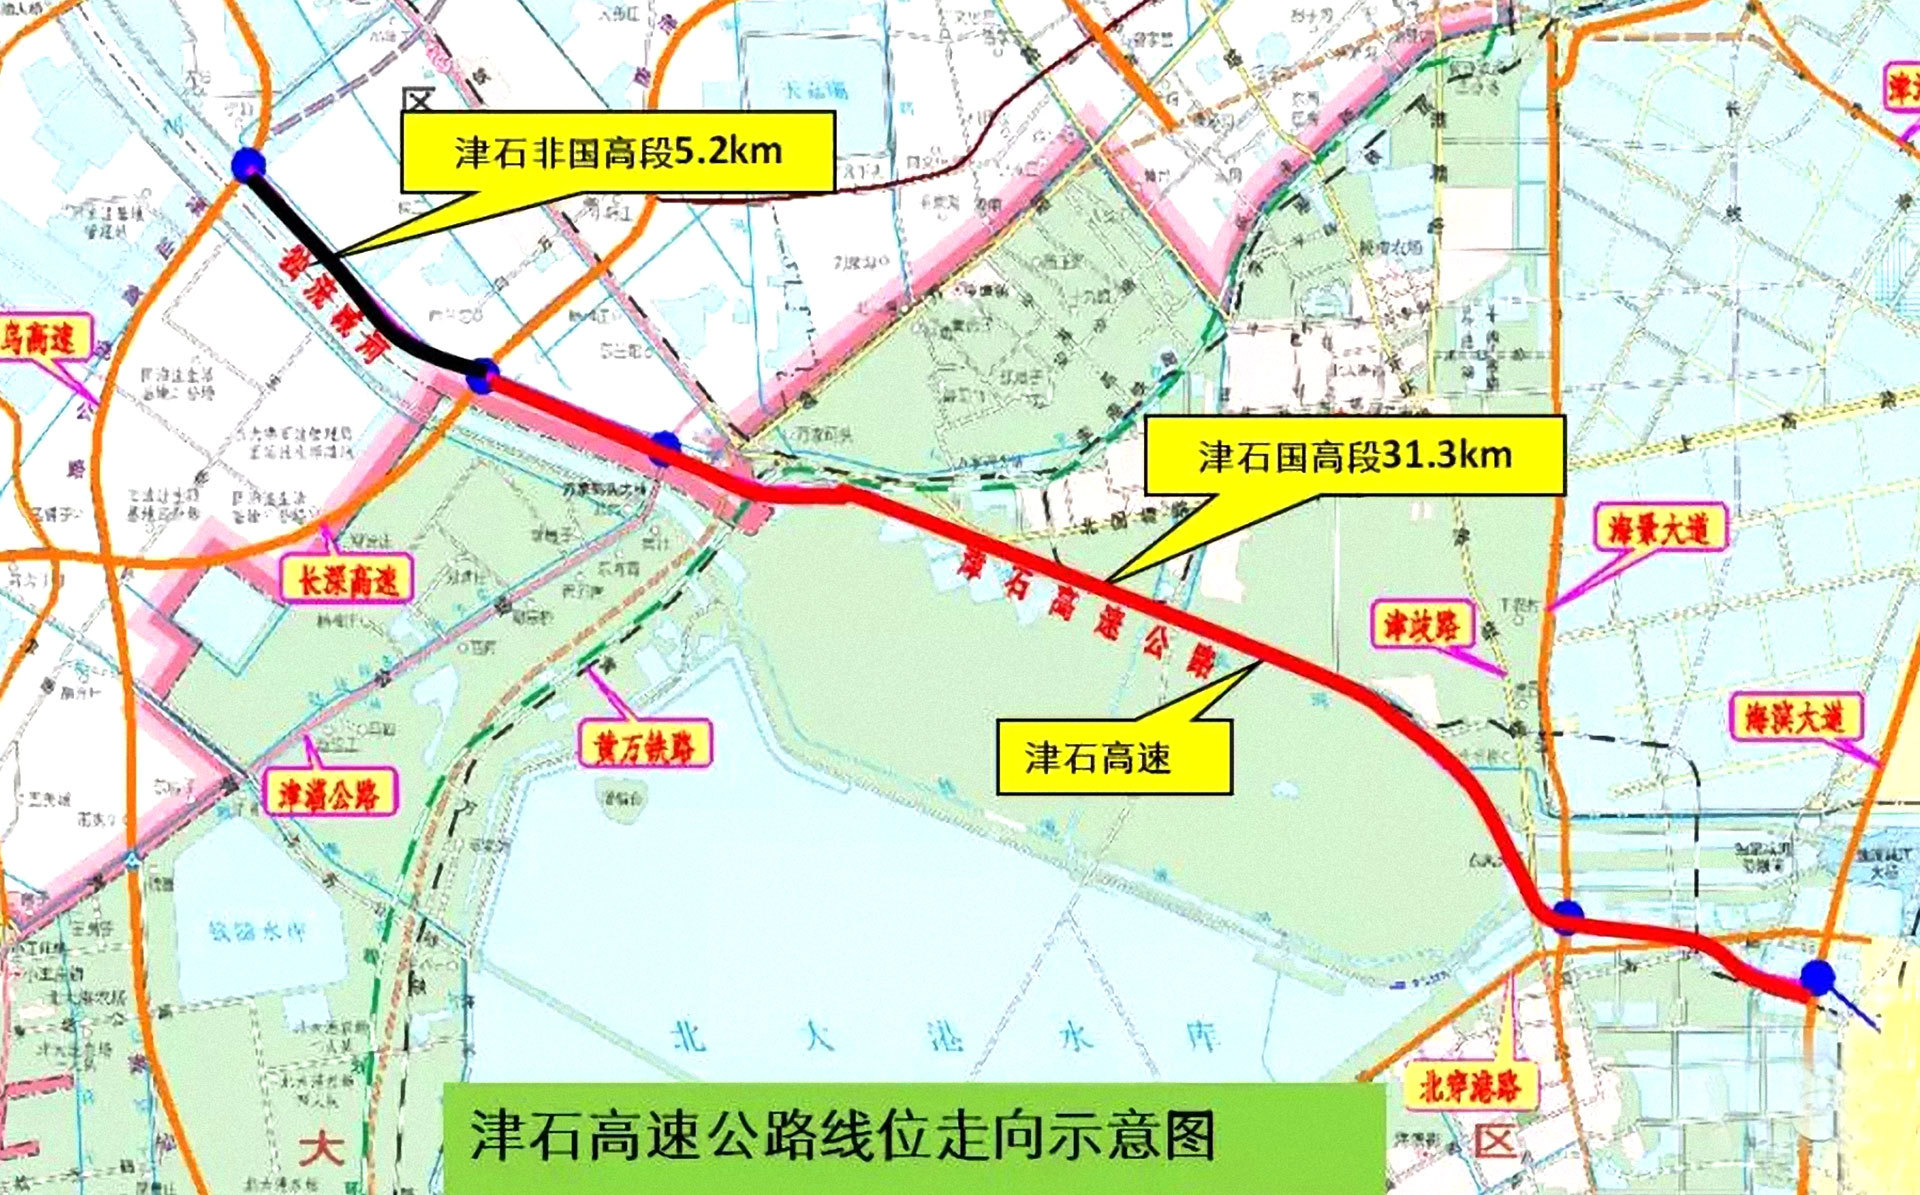 Tianjin-Shijiazhuang Expressway